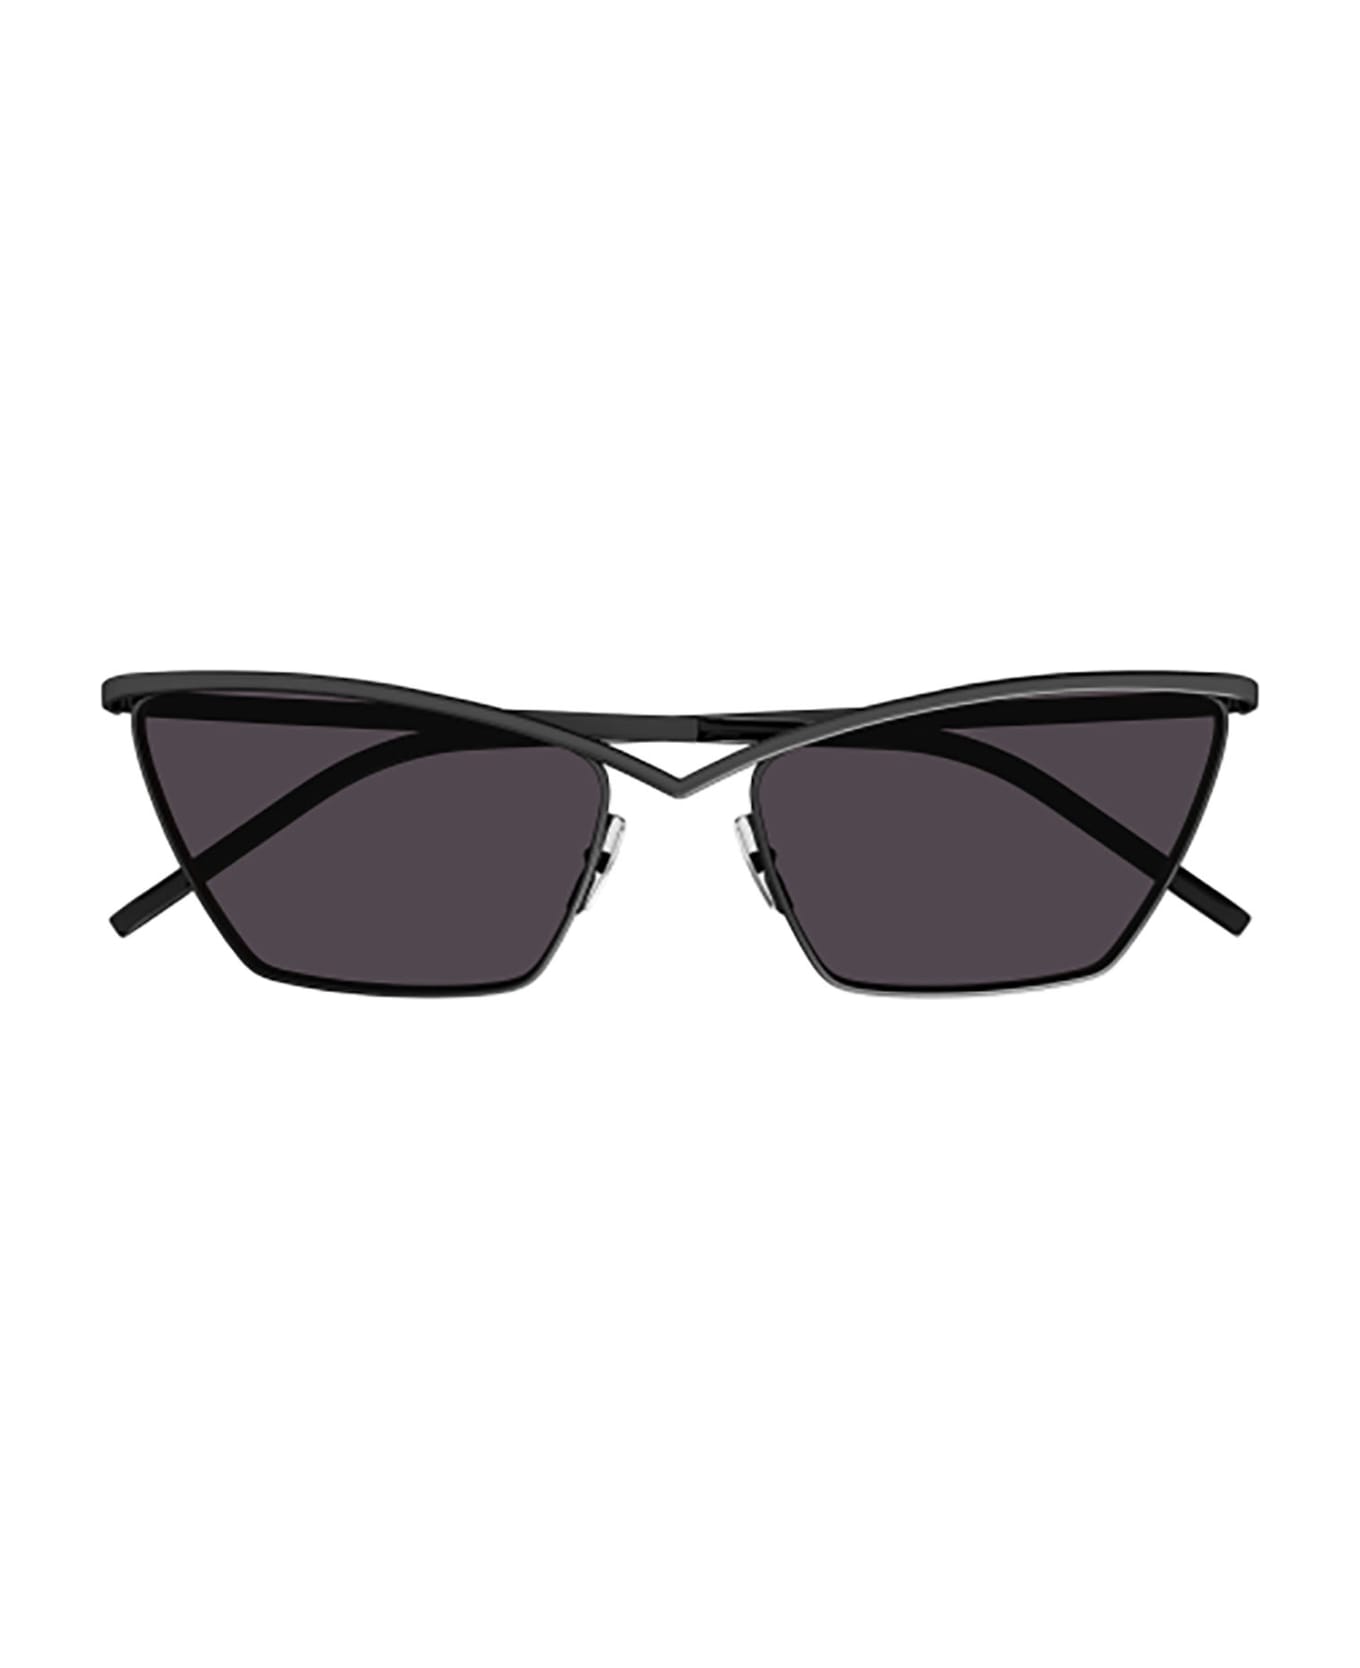 Saint Laurent Eyewear SL 637 Sunglasses - Black Black Black